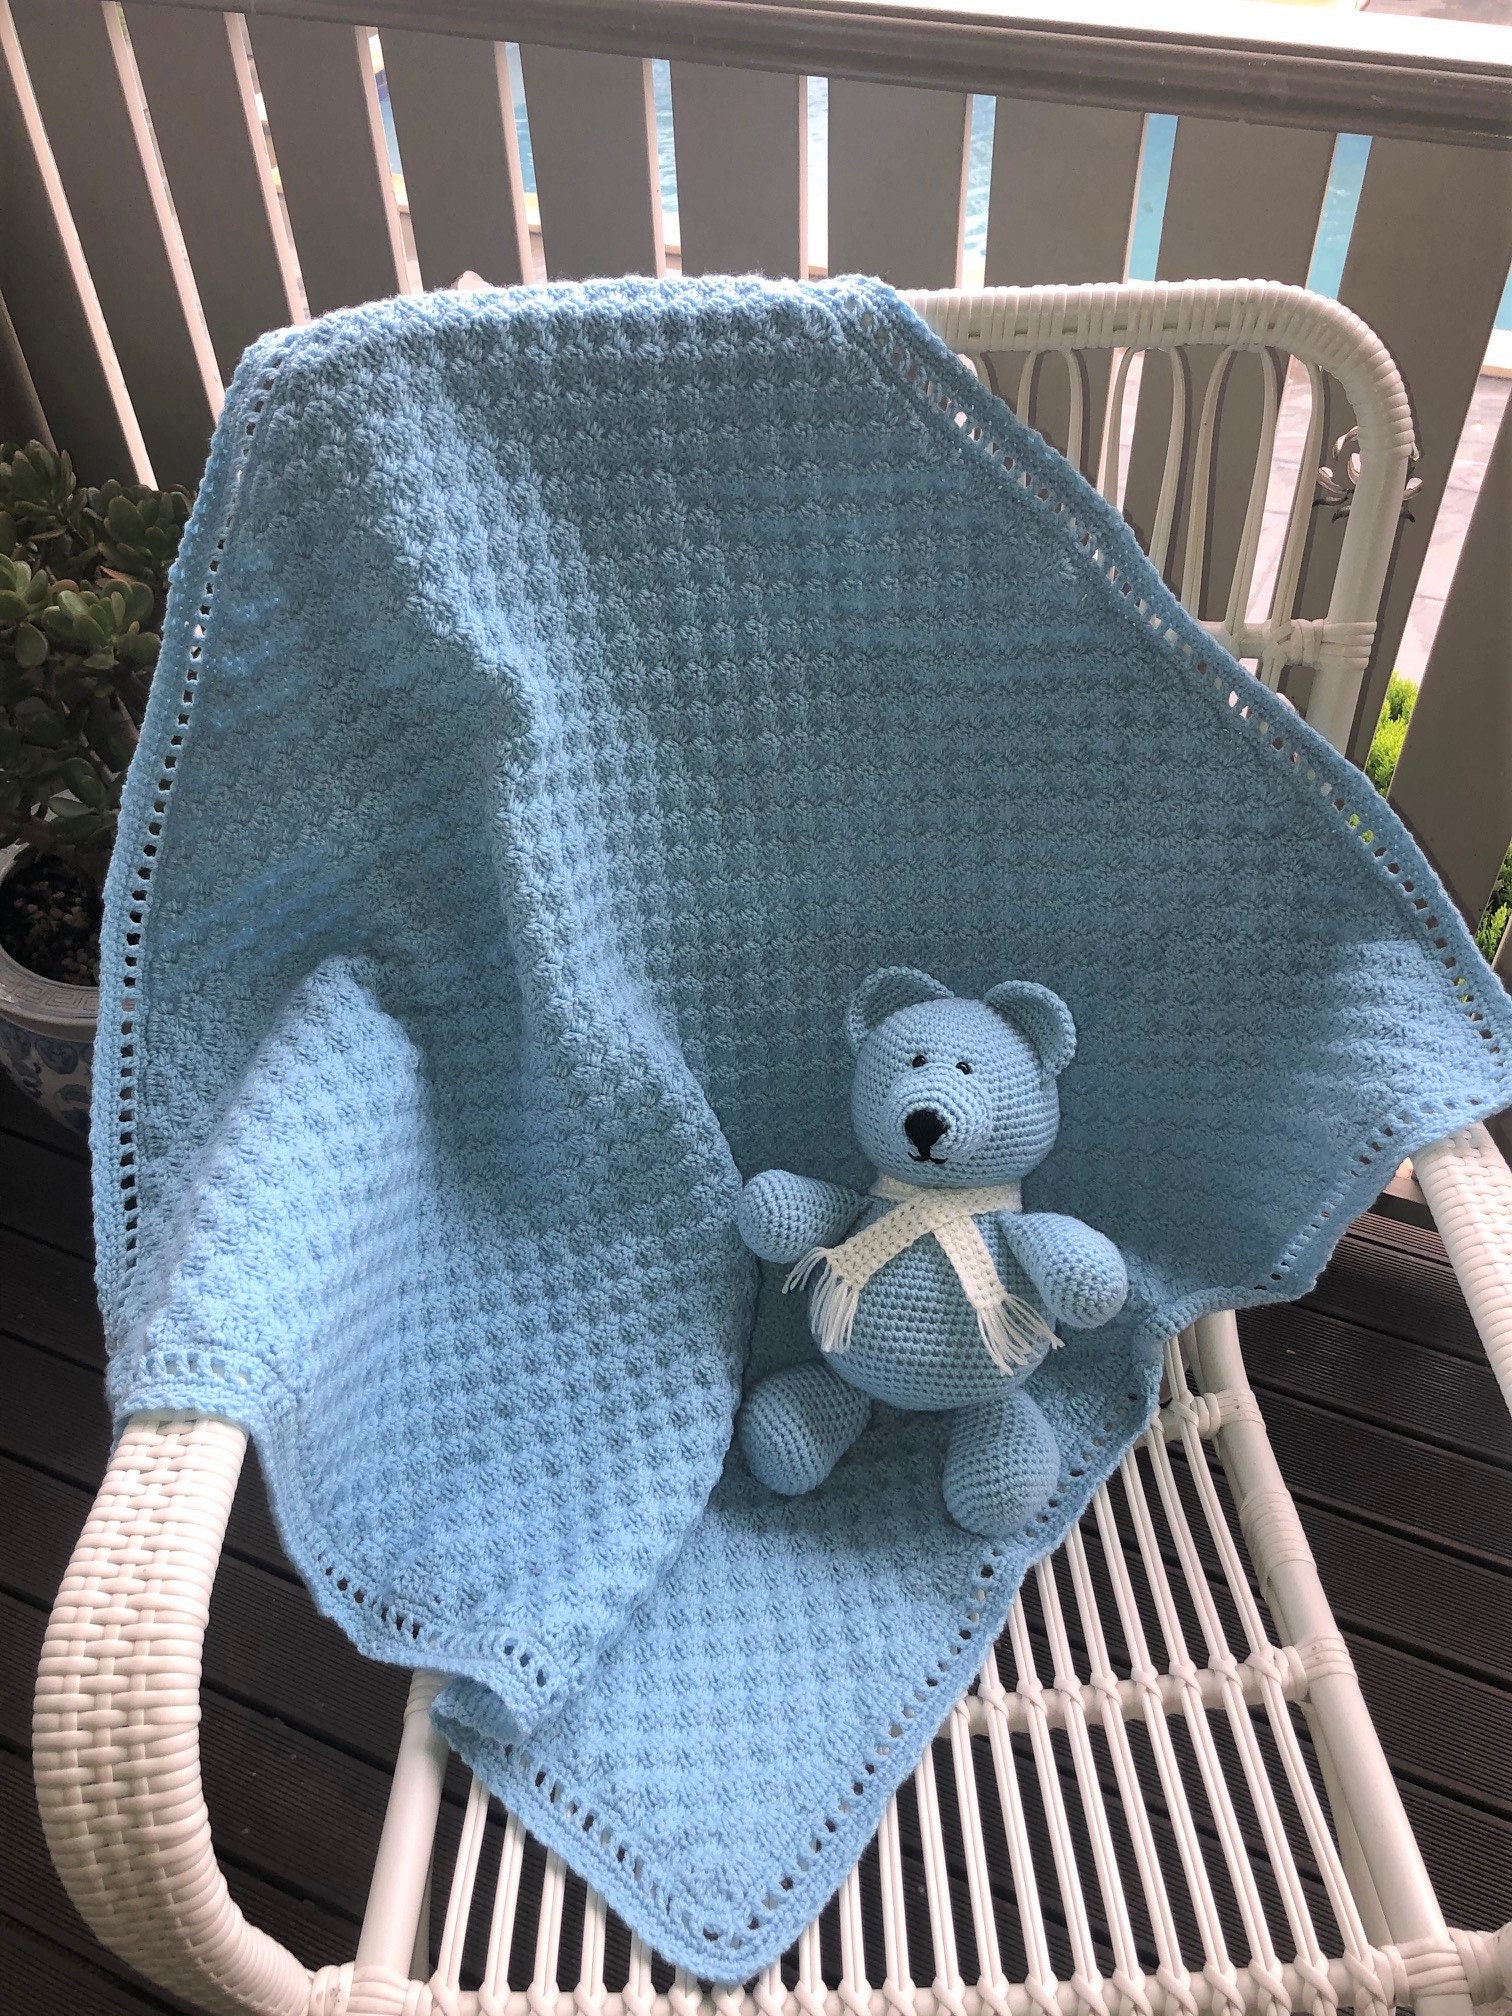 Doudou Color Azul Marino,23 x 23cm,Doudou Osito Topos para Bebé, Toalla  Manta para bebés Toalla de Saliva,Ultra Suave de Microfibra,Regalo Bebé